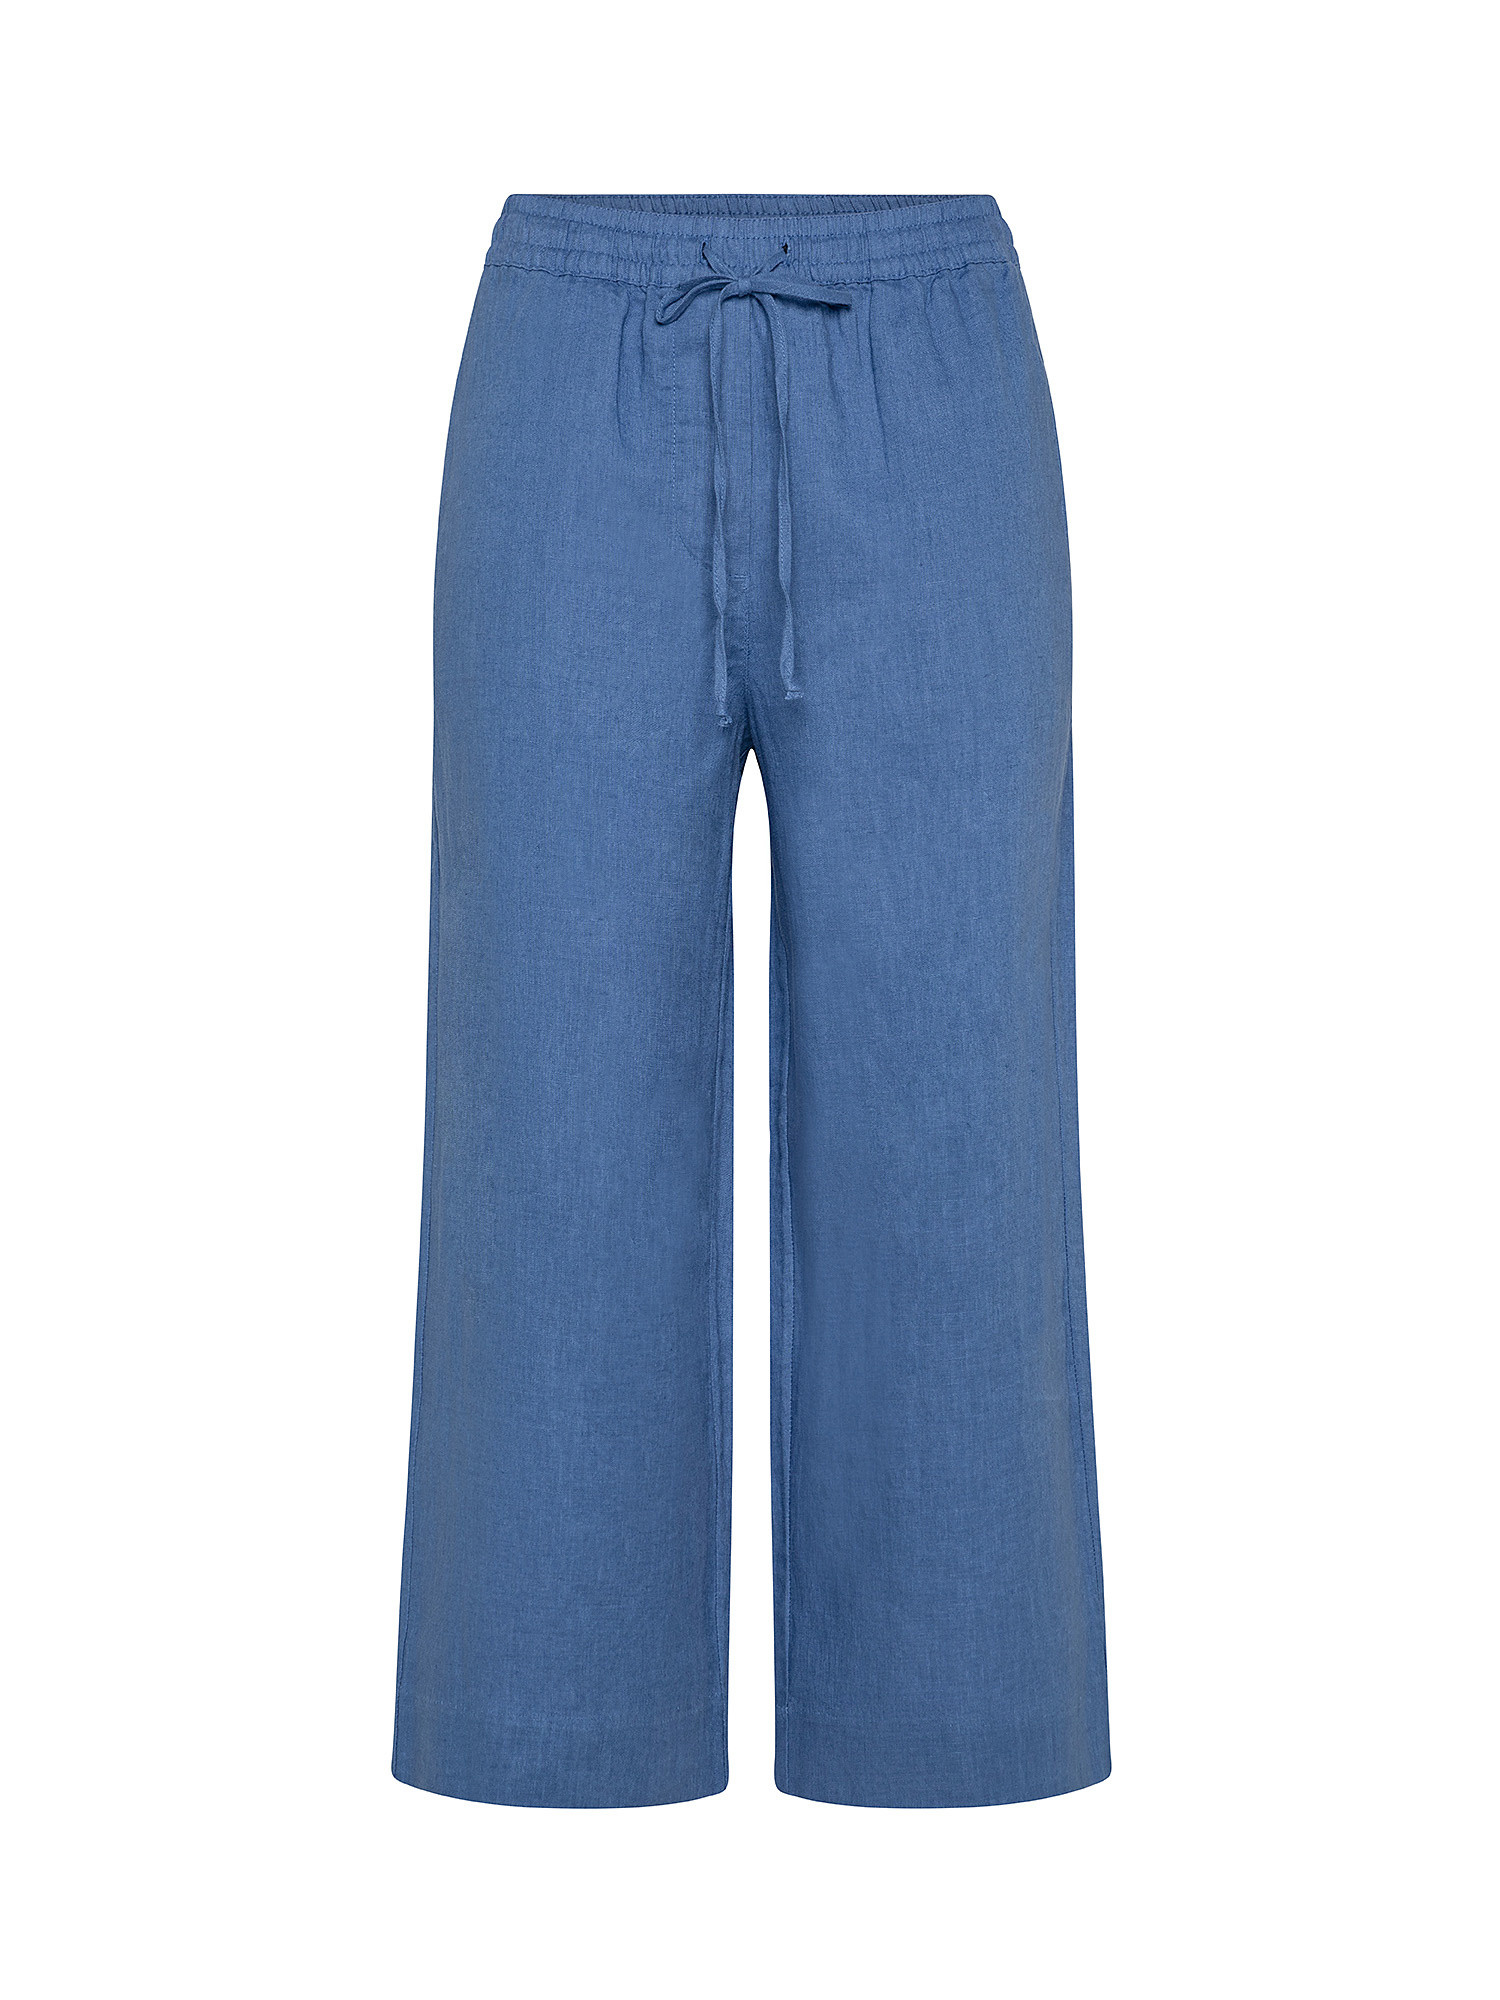 Pantalone a gamba ampia in lino, Blu, large image number 0